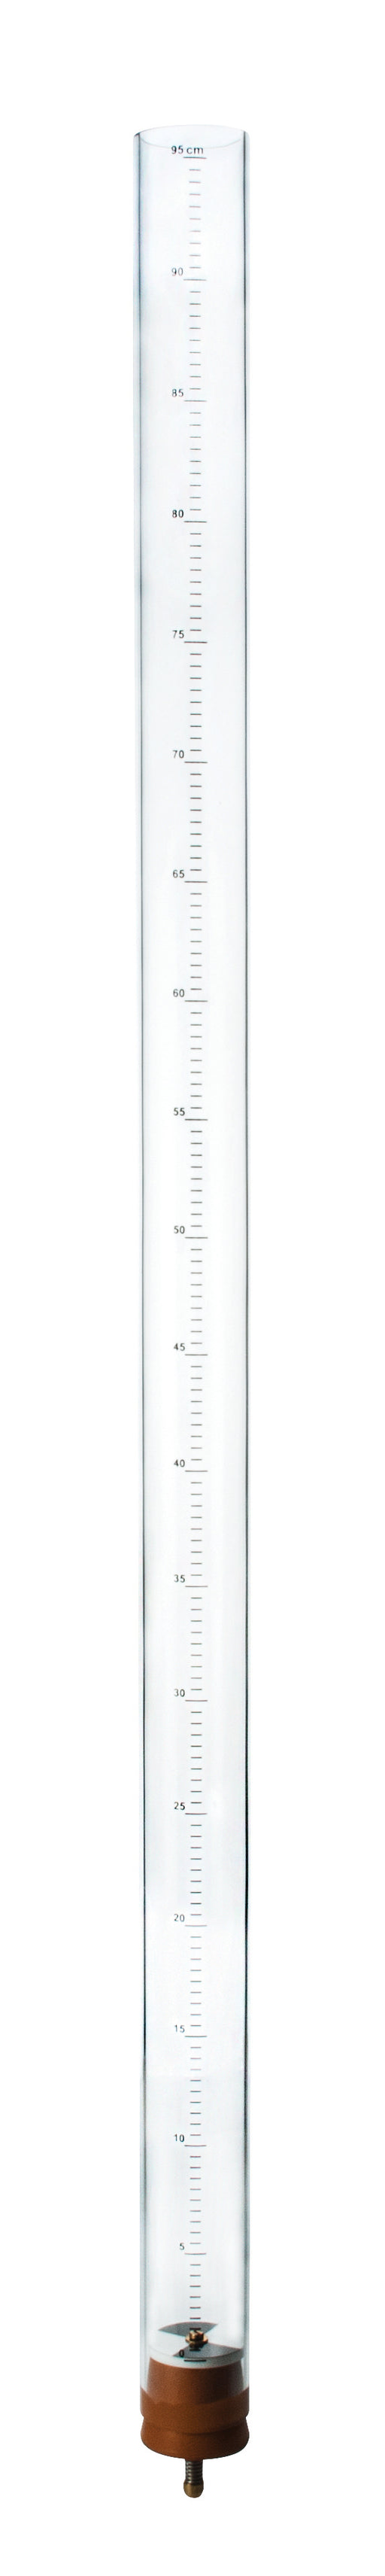 伊斯科透明浊度管- 1米